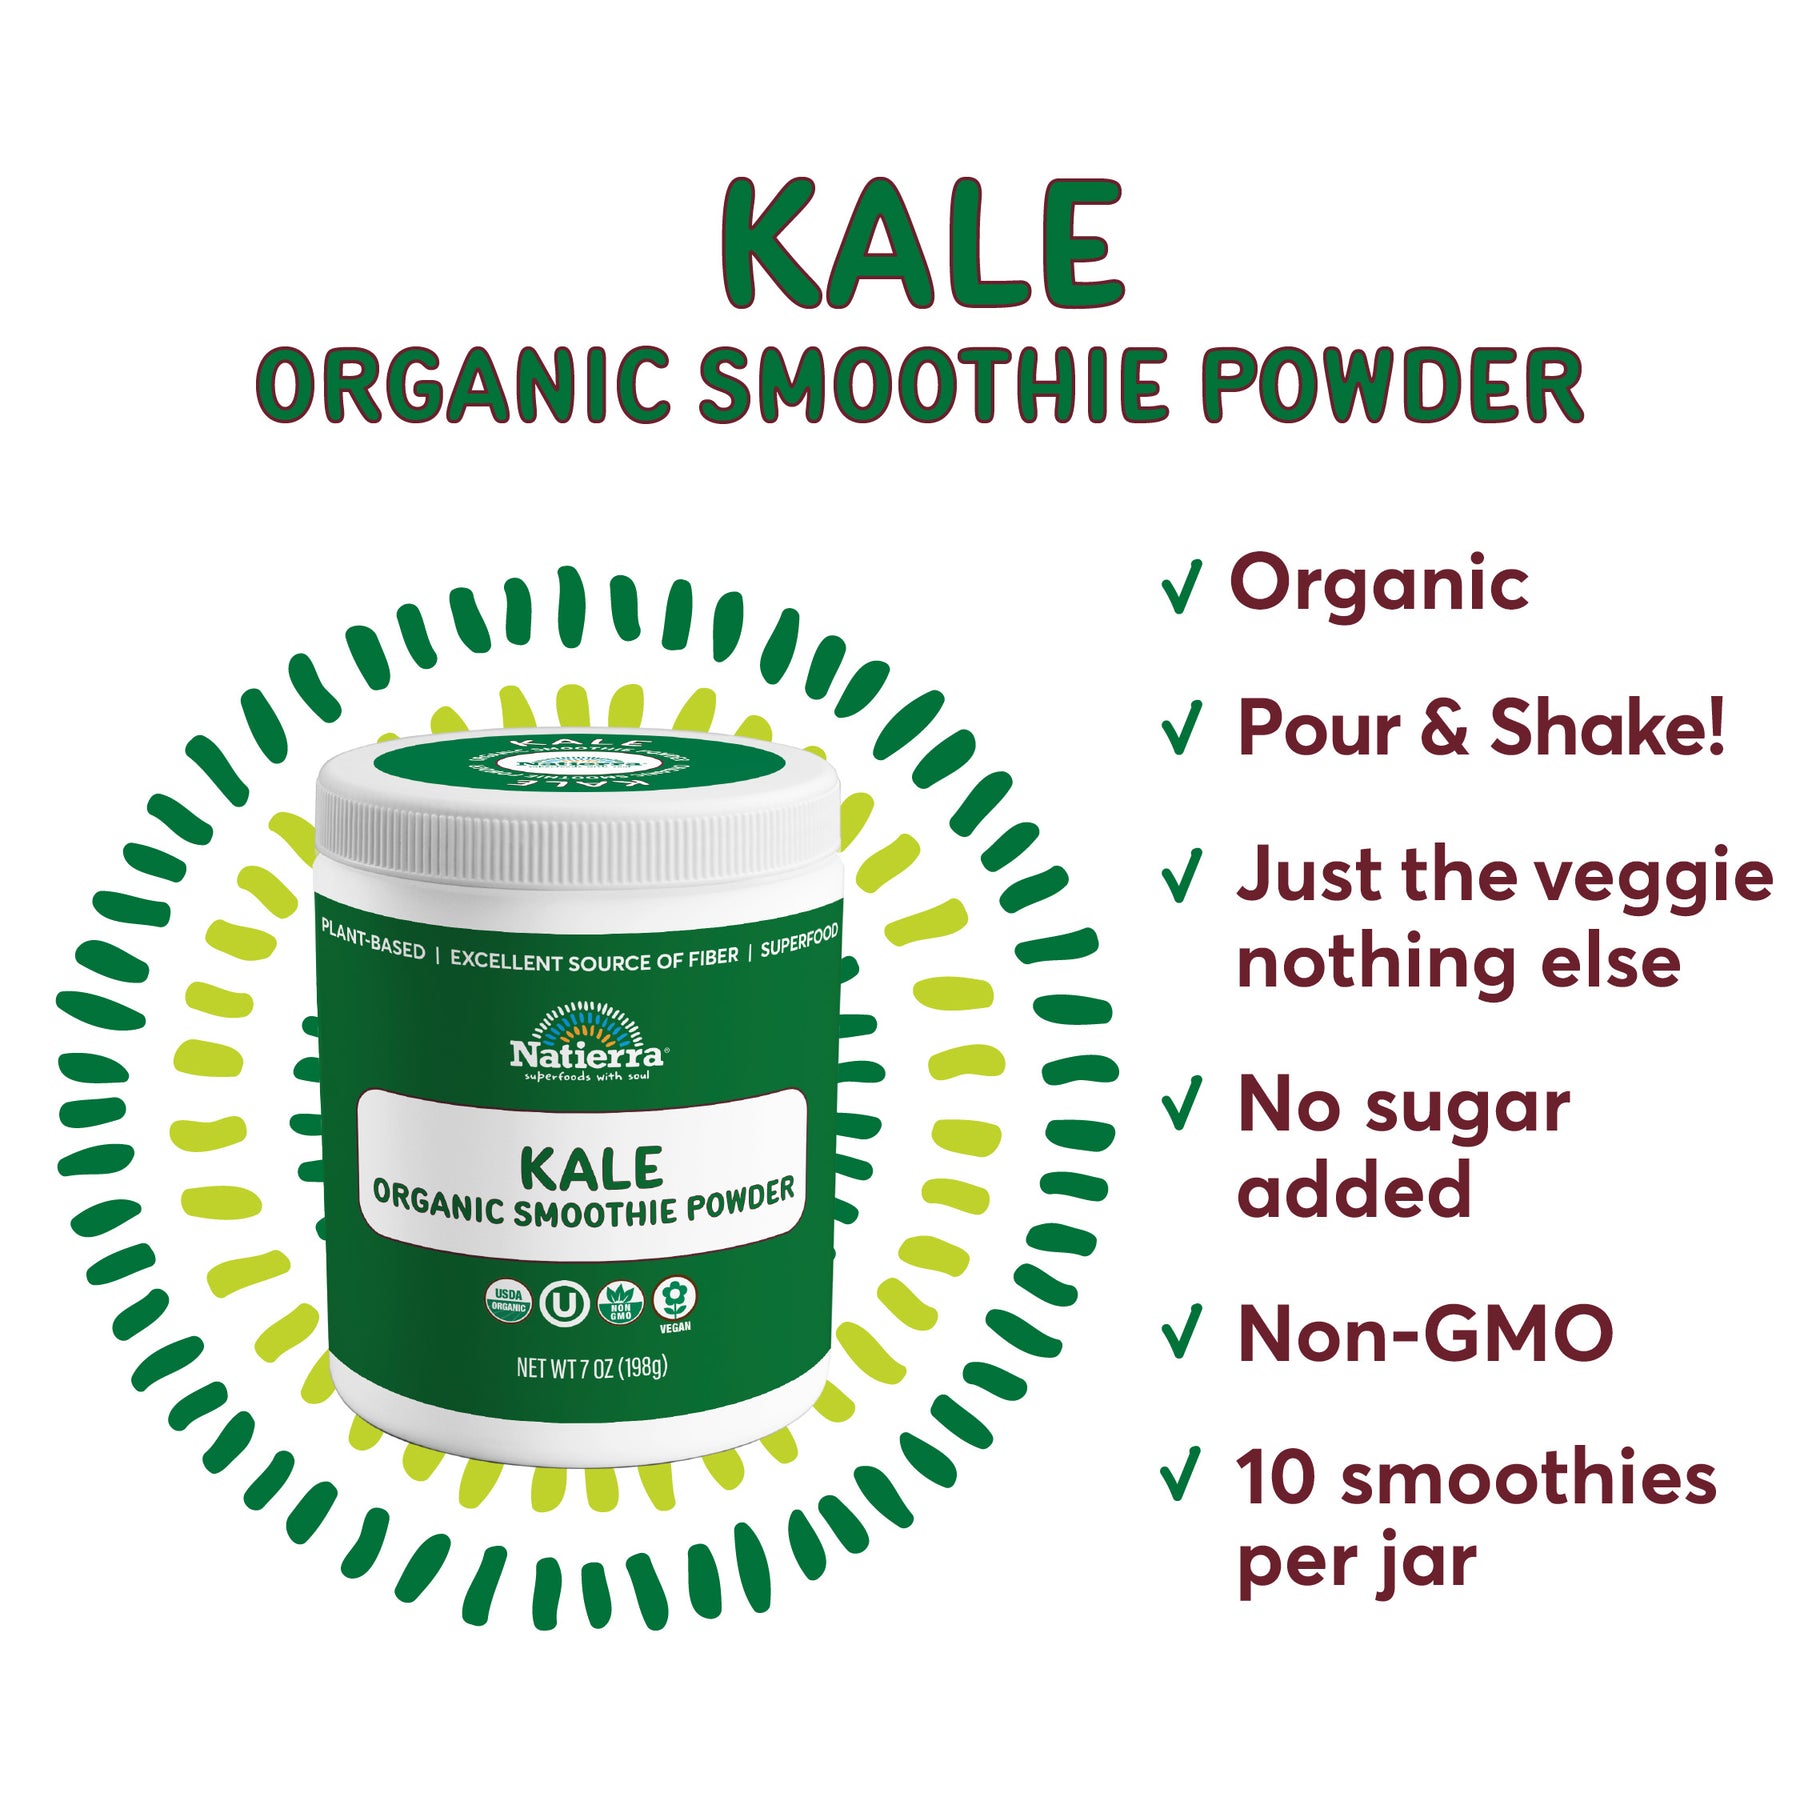 Kale Organic Smoothie